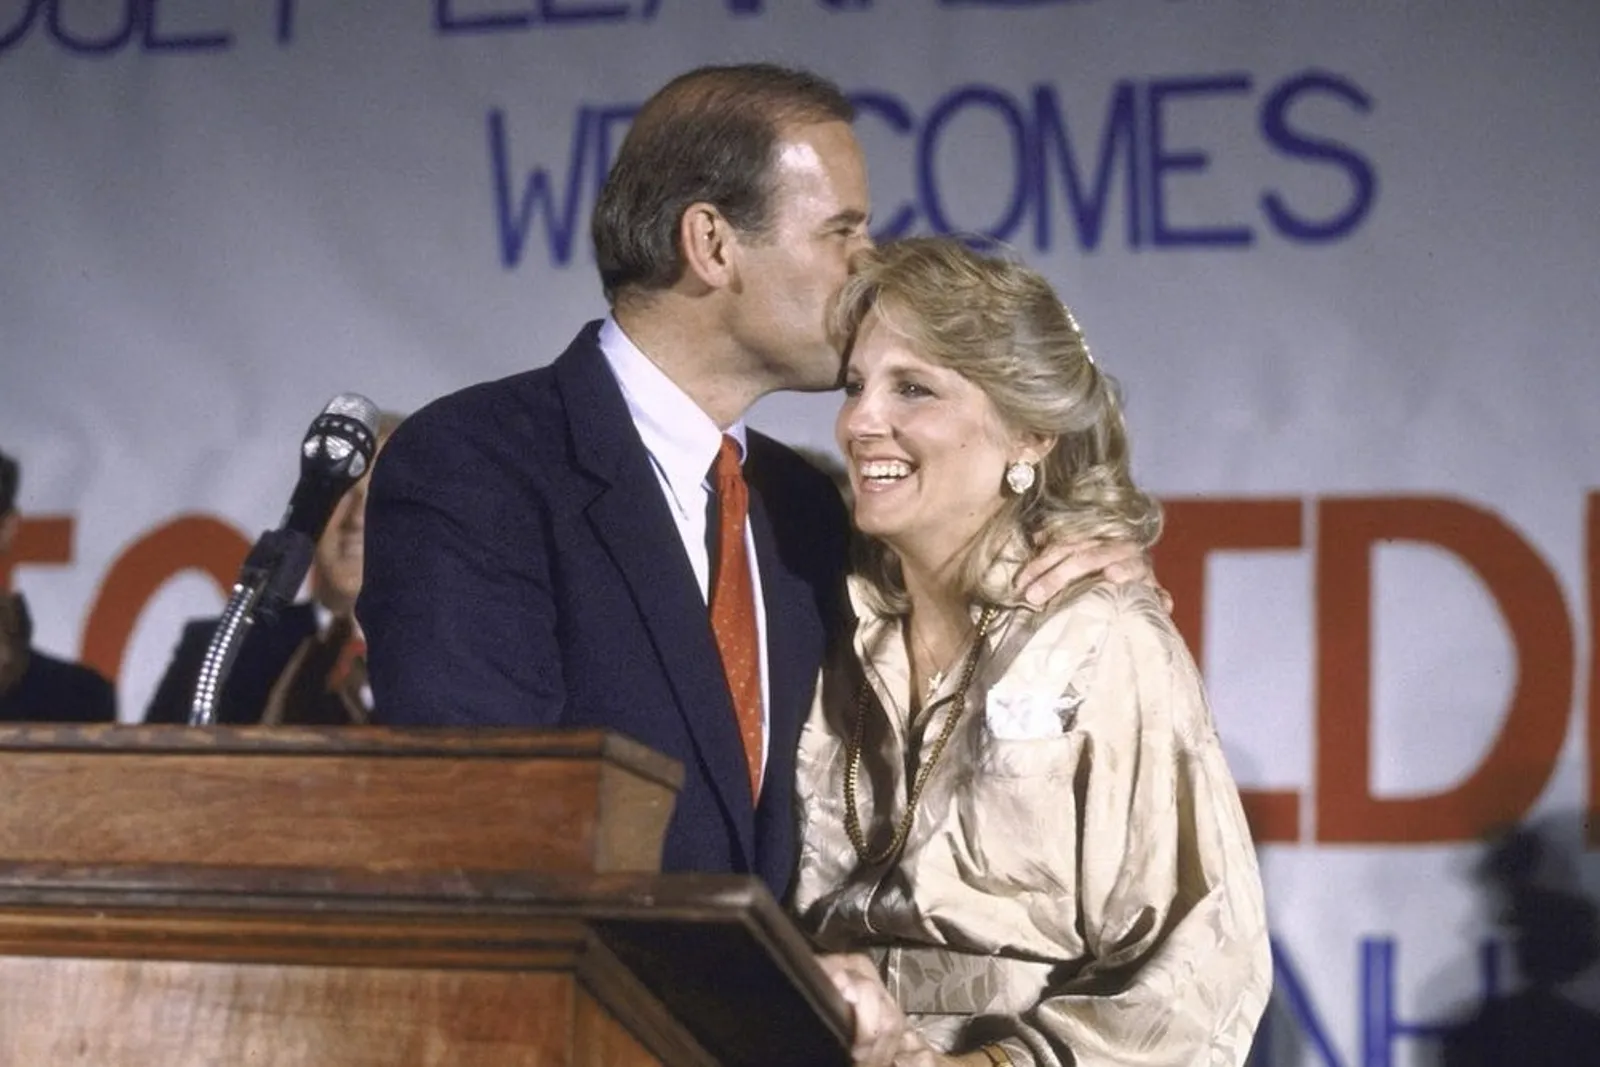 Romantis dan Penuh Haru, Ini 6 Fakta Perjalanan Cinta Joe & Jill Biden